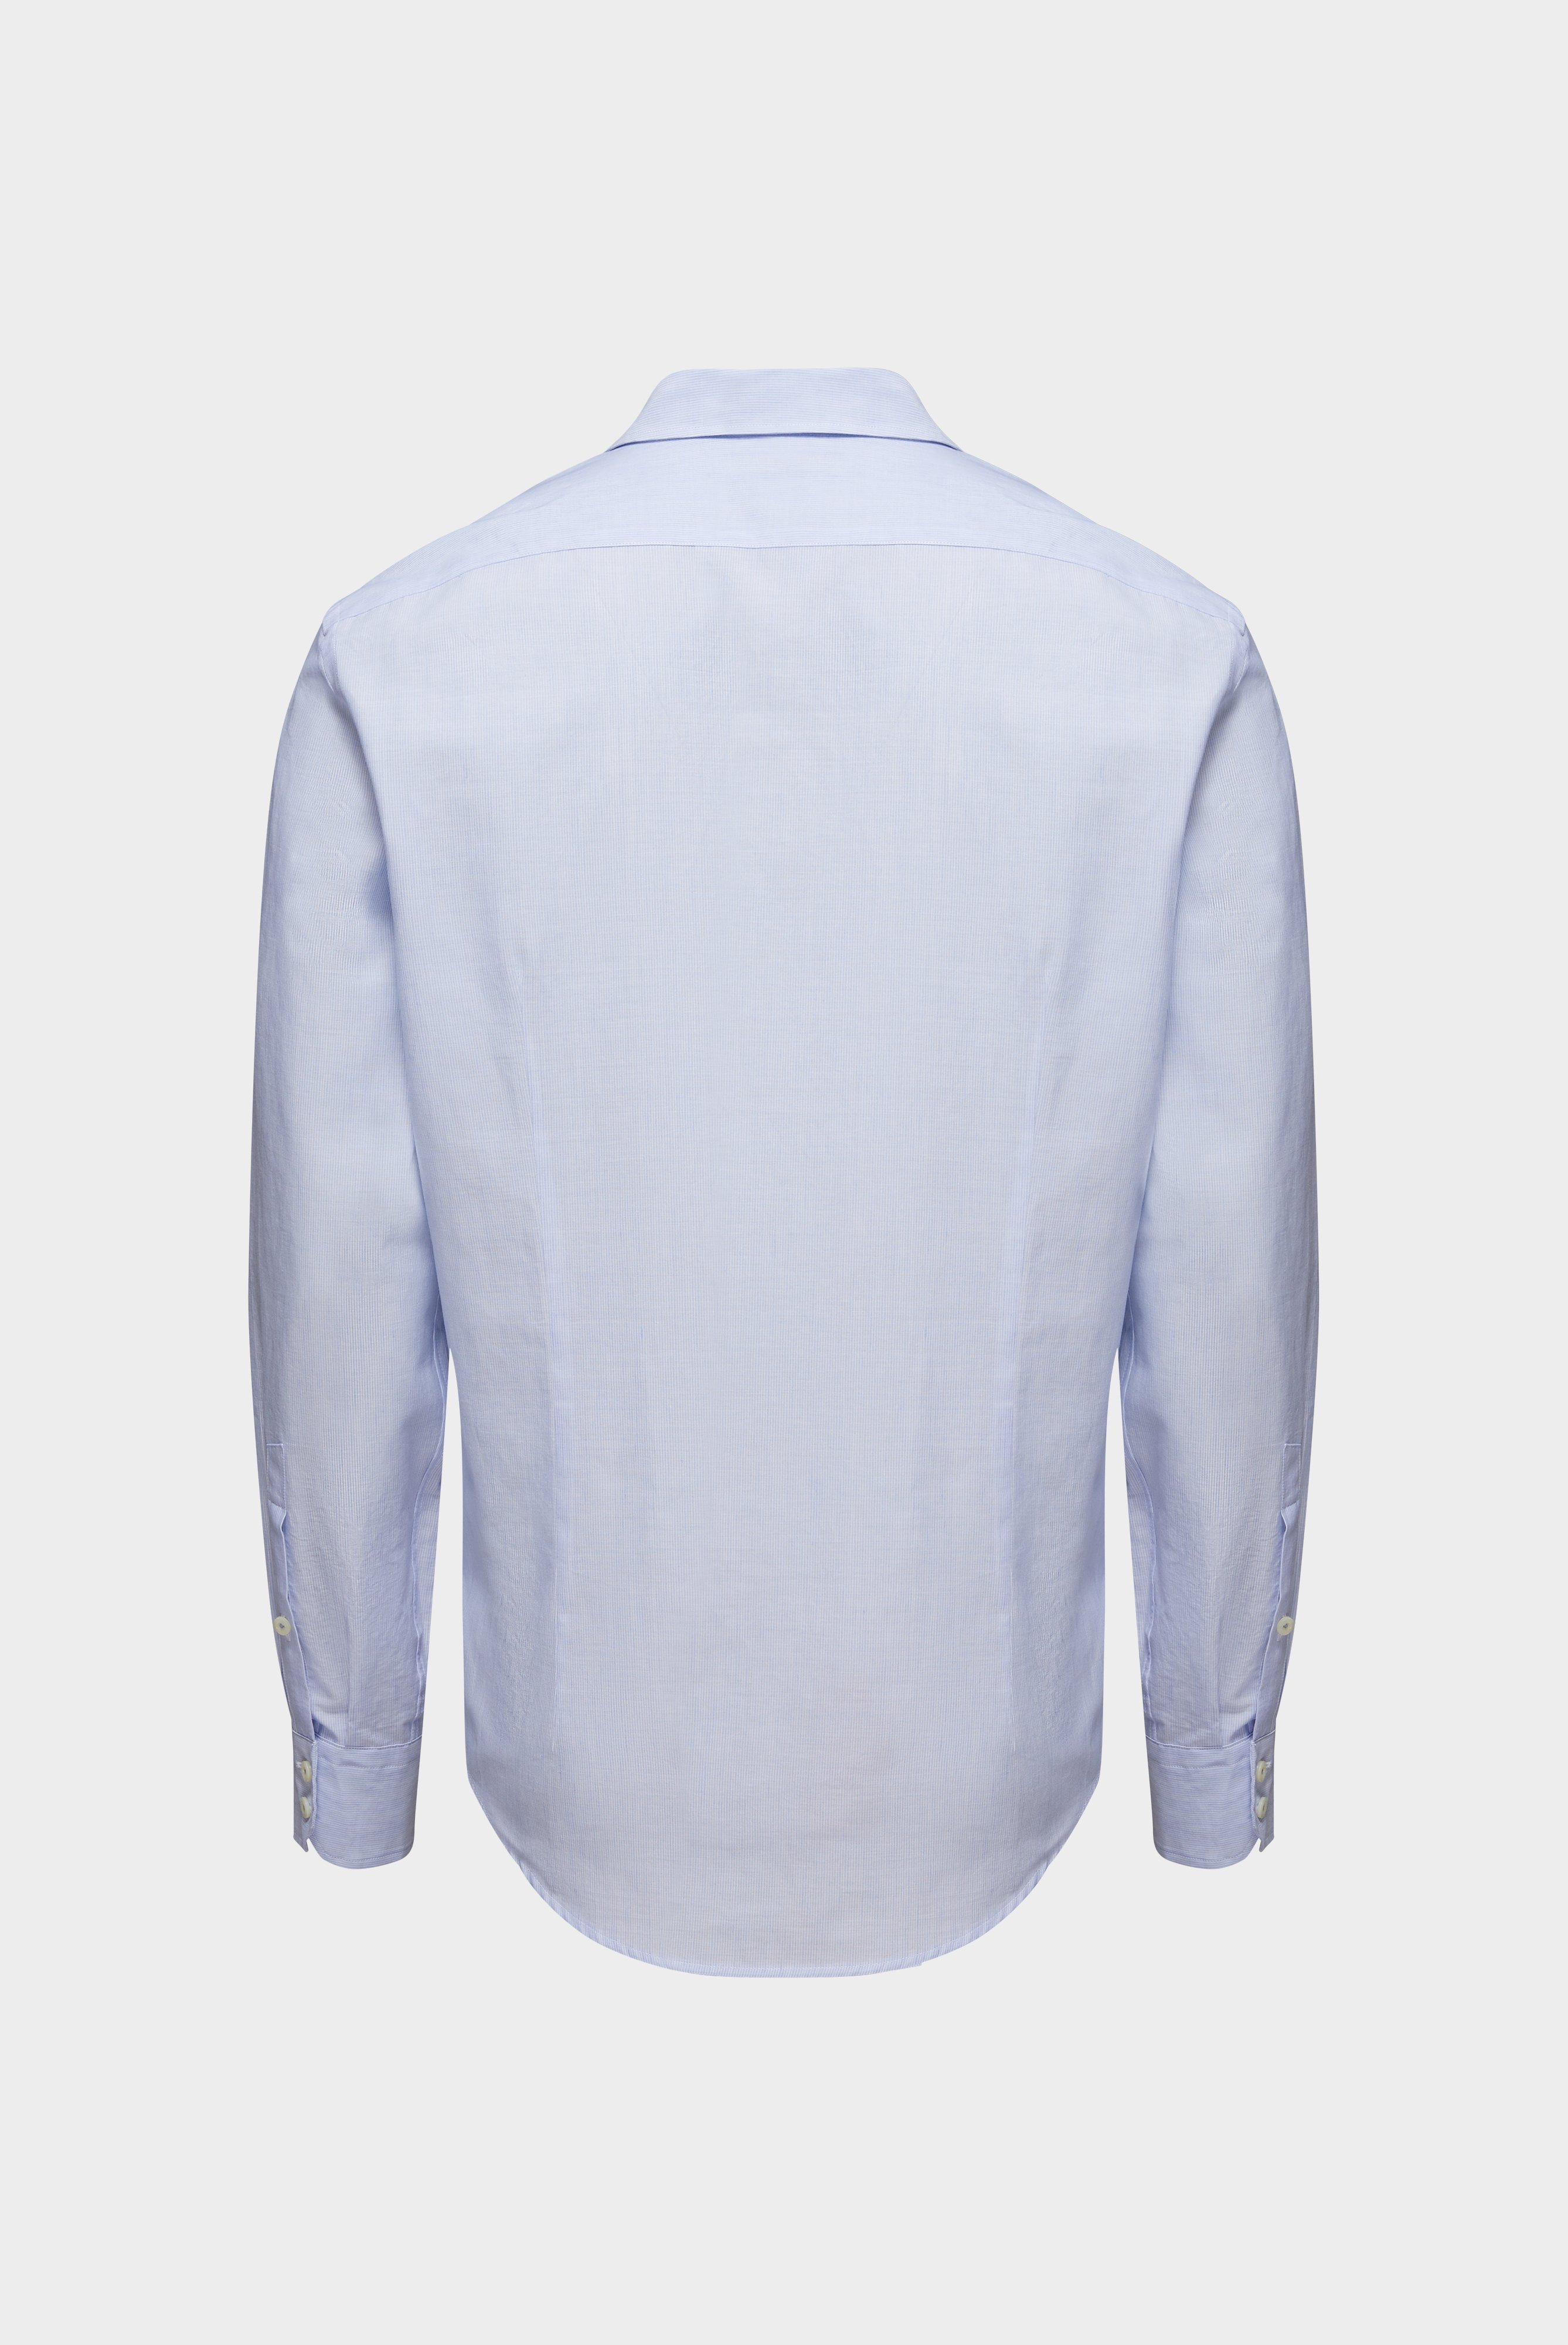 Casual Hemden+Hemd aus Baumwolle und Leinen Tailor Fit+20.2011.AV.151023.720.38